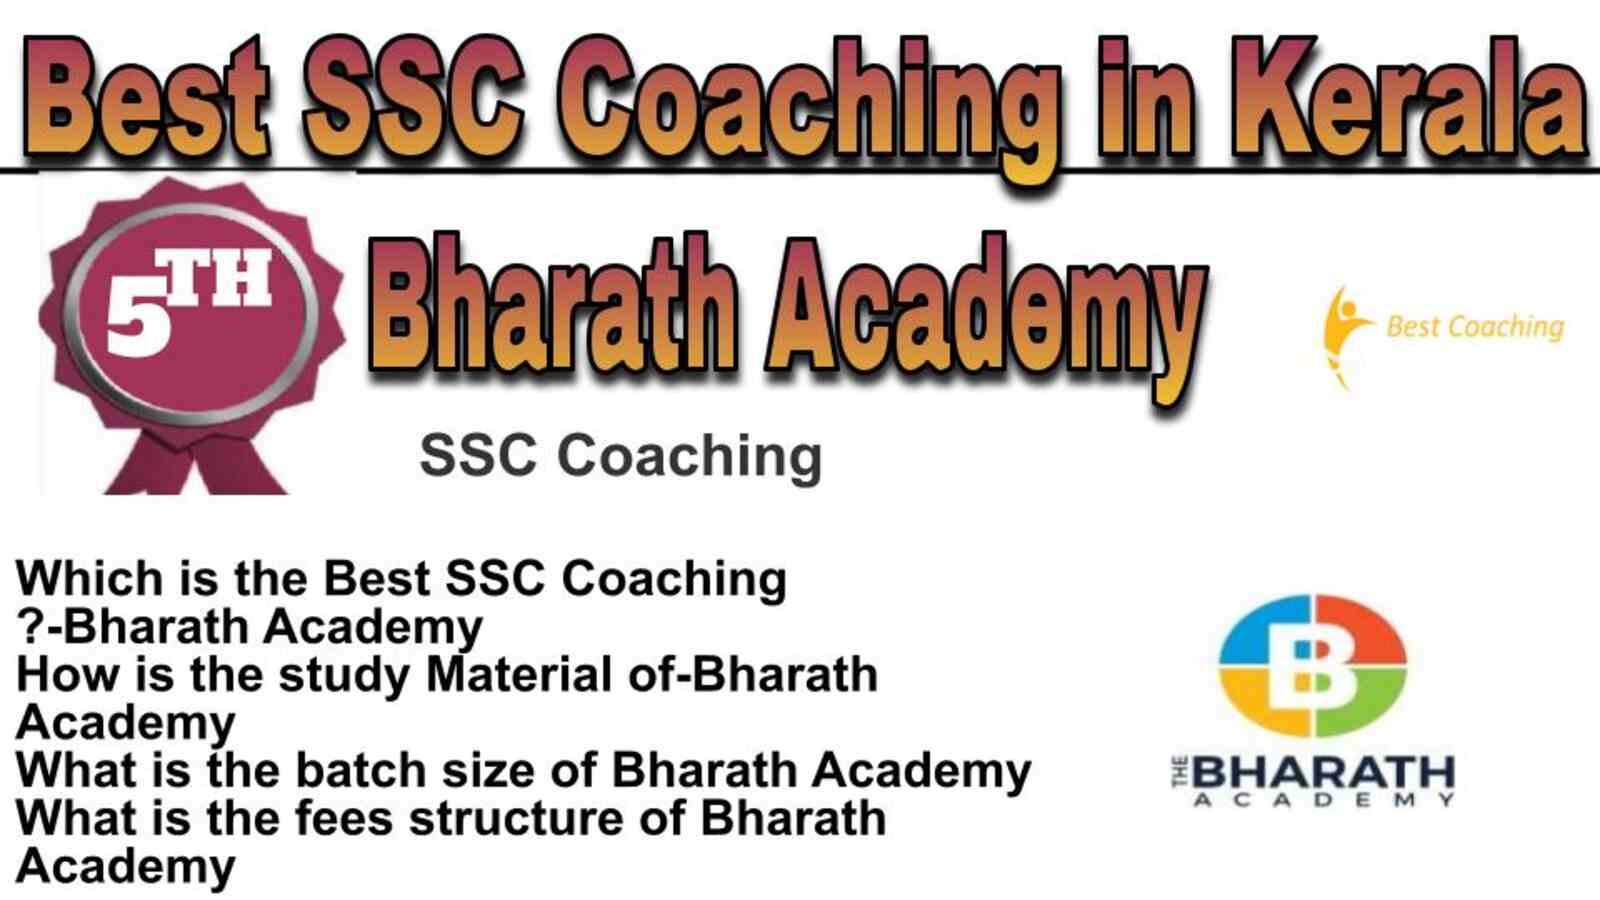 Rank 5 best SSC coaching in Kerala